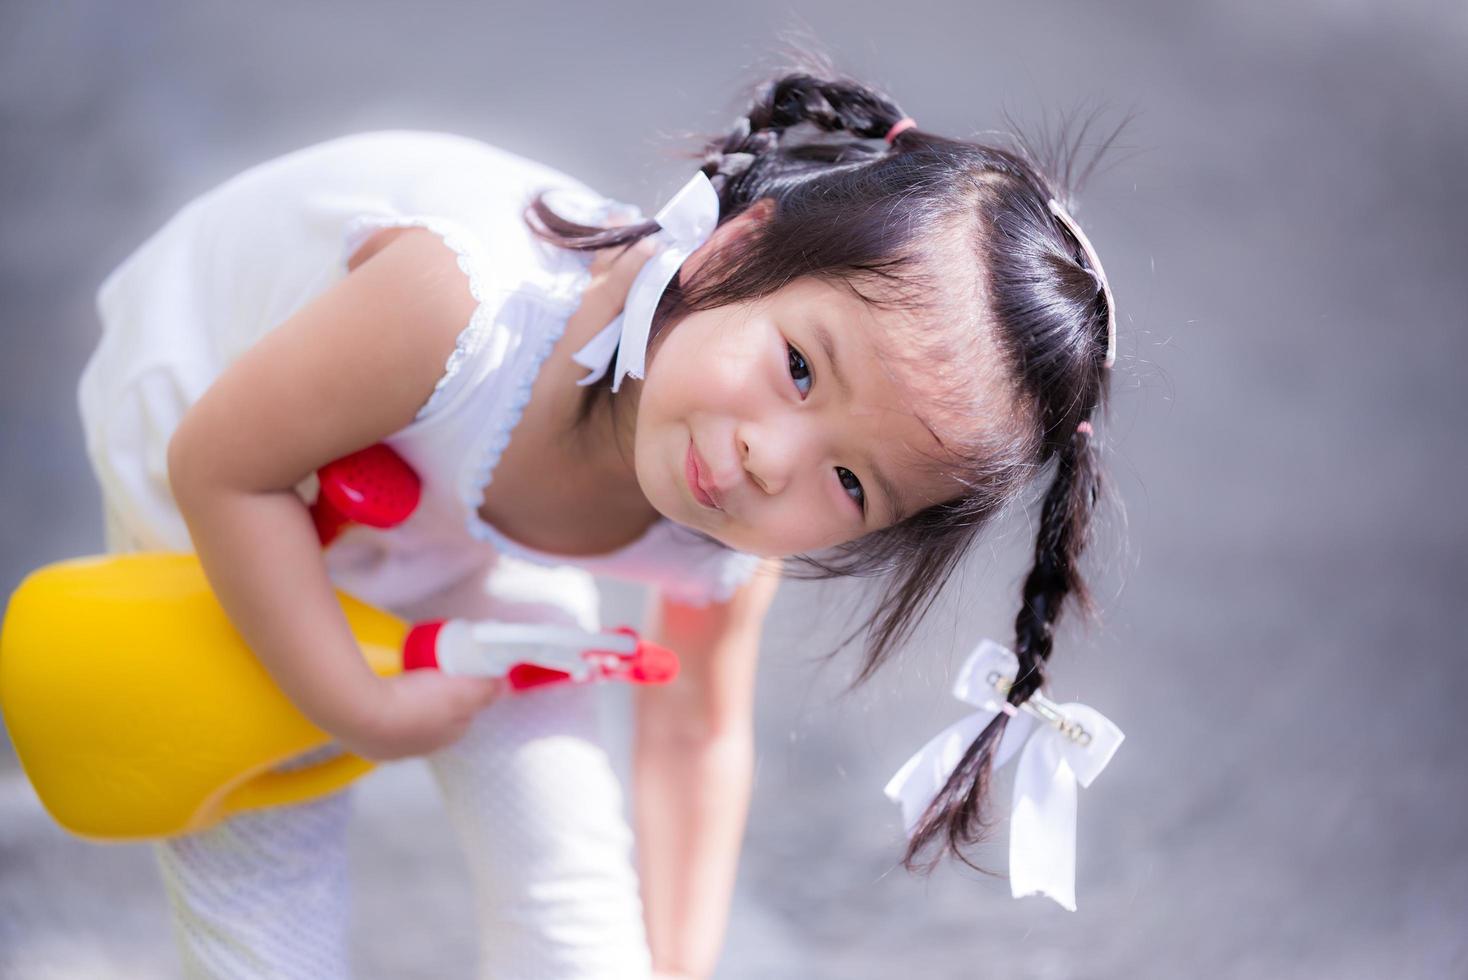 schattig meisje speelt met een gele plant gieter. kind glimlachte lief en krabde aan zijn benen. klein kind gekleed in het wit, 3 jaar oud. foto